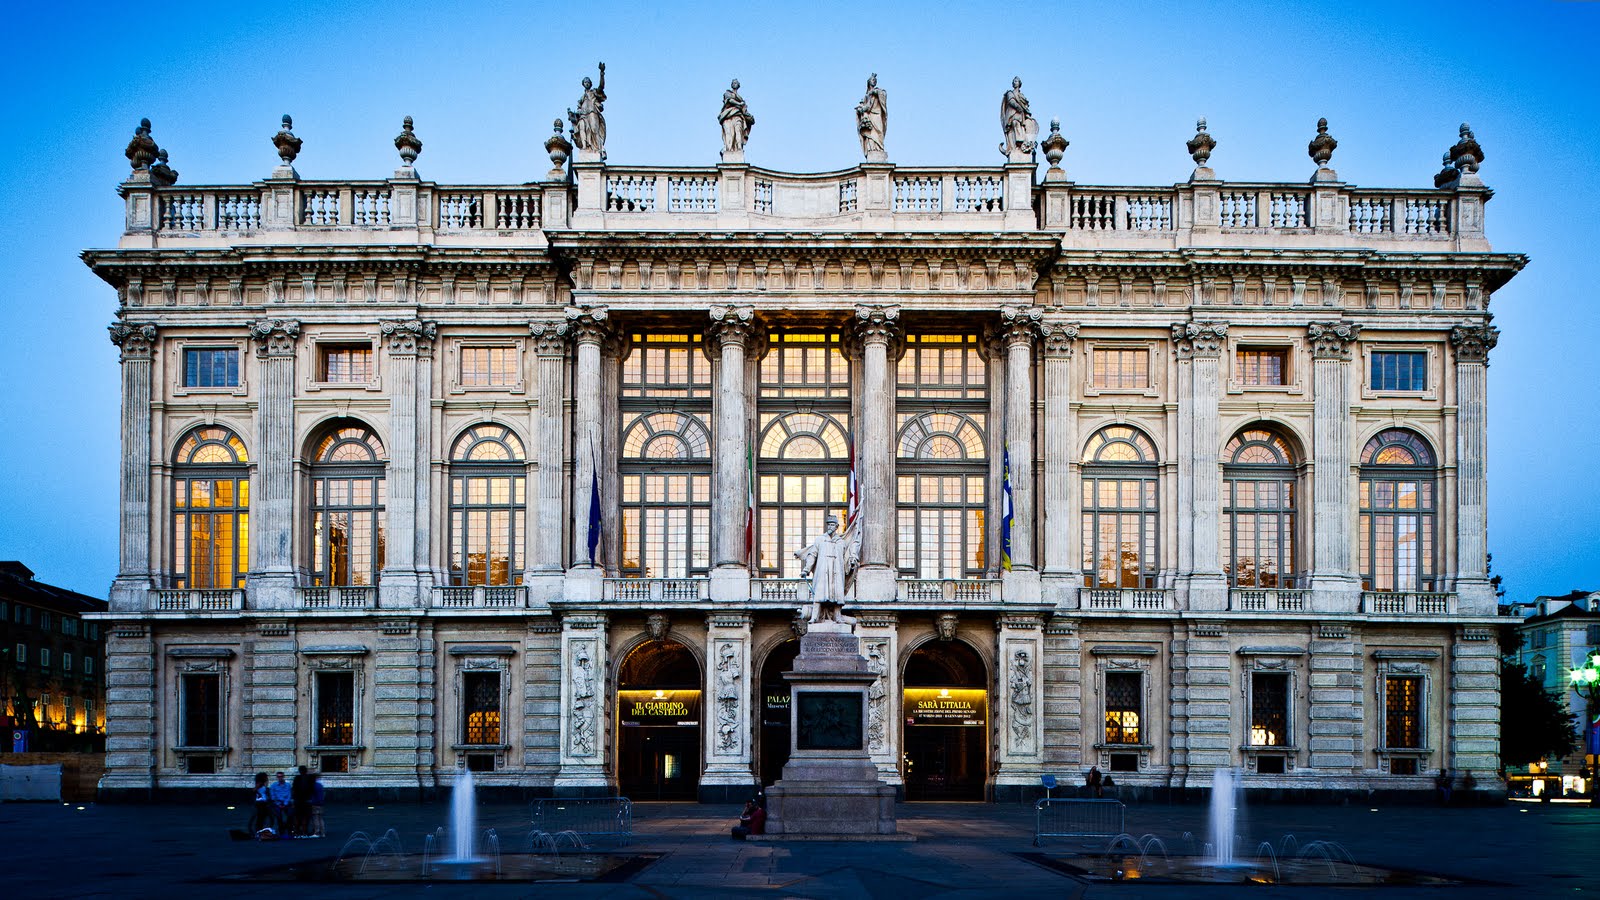 Torino, il restauro di Palazzo Madama terminerà entro 2 anni: pronto per le Atp Finals 2021